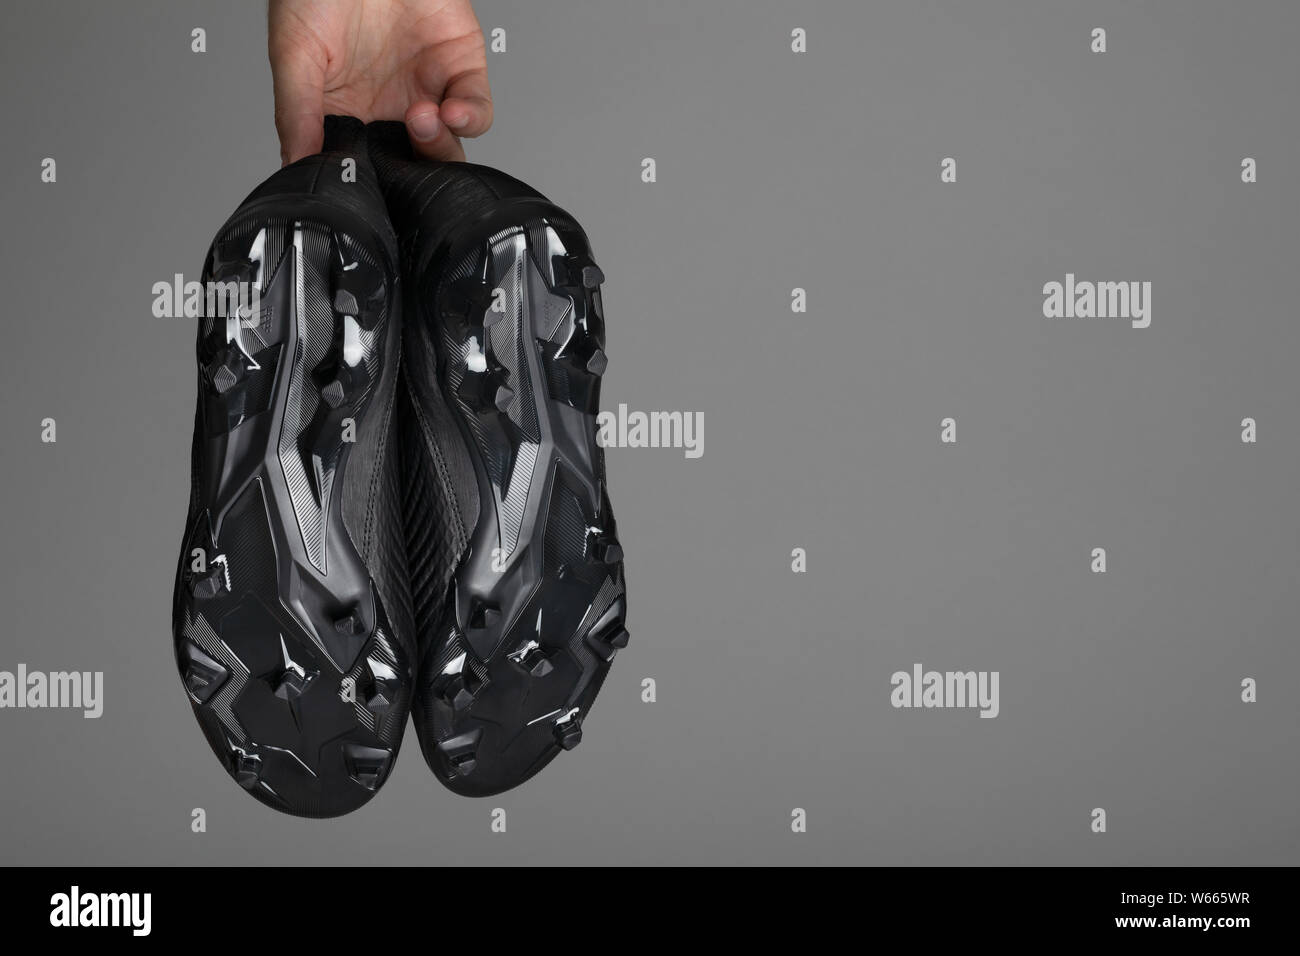 Botines de fútbol botas fotografías e imágenes de alta resolución - Alamy